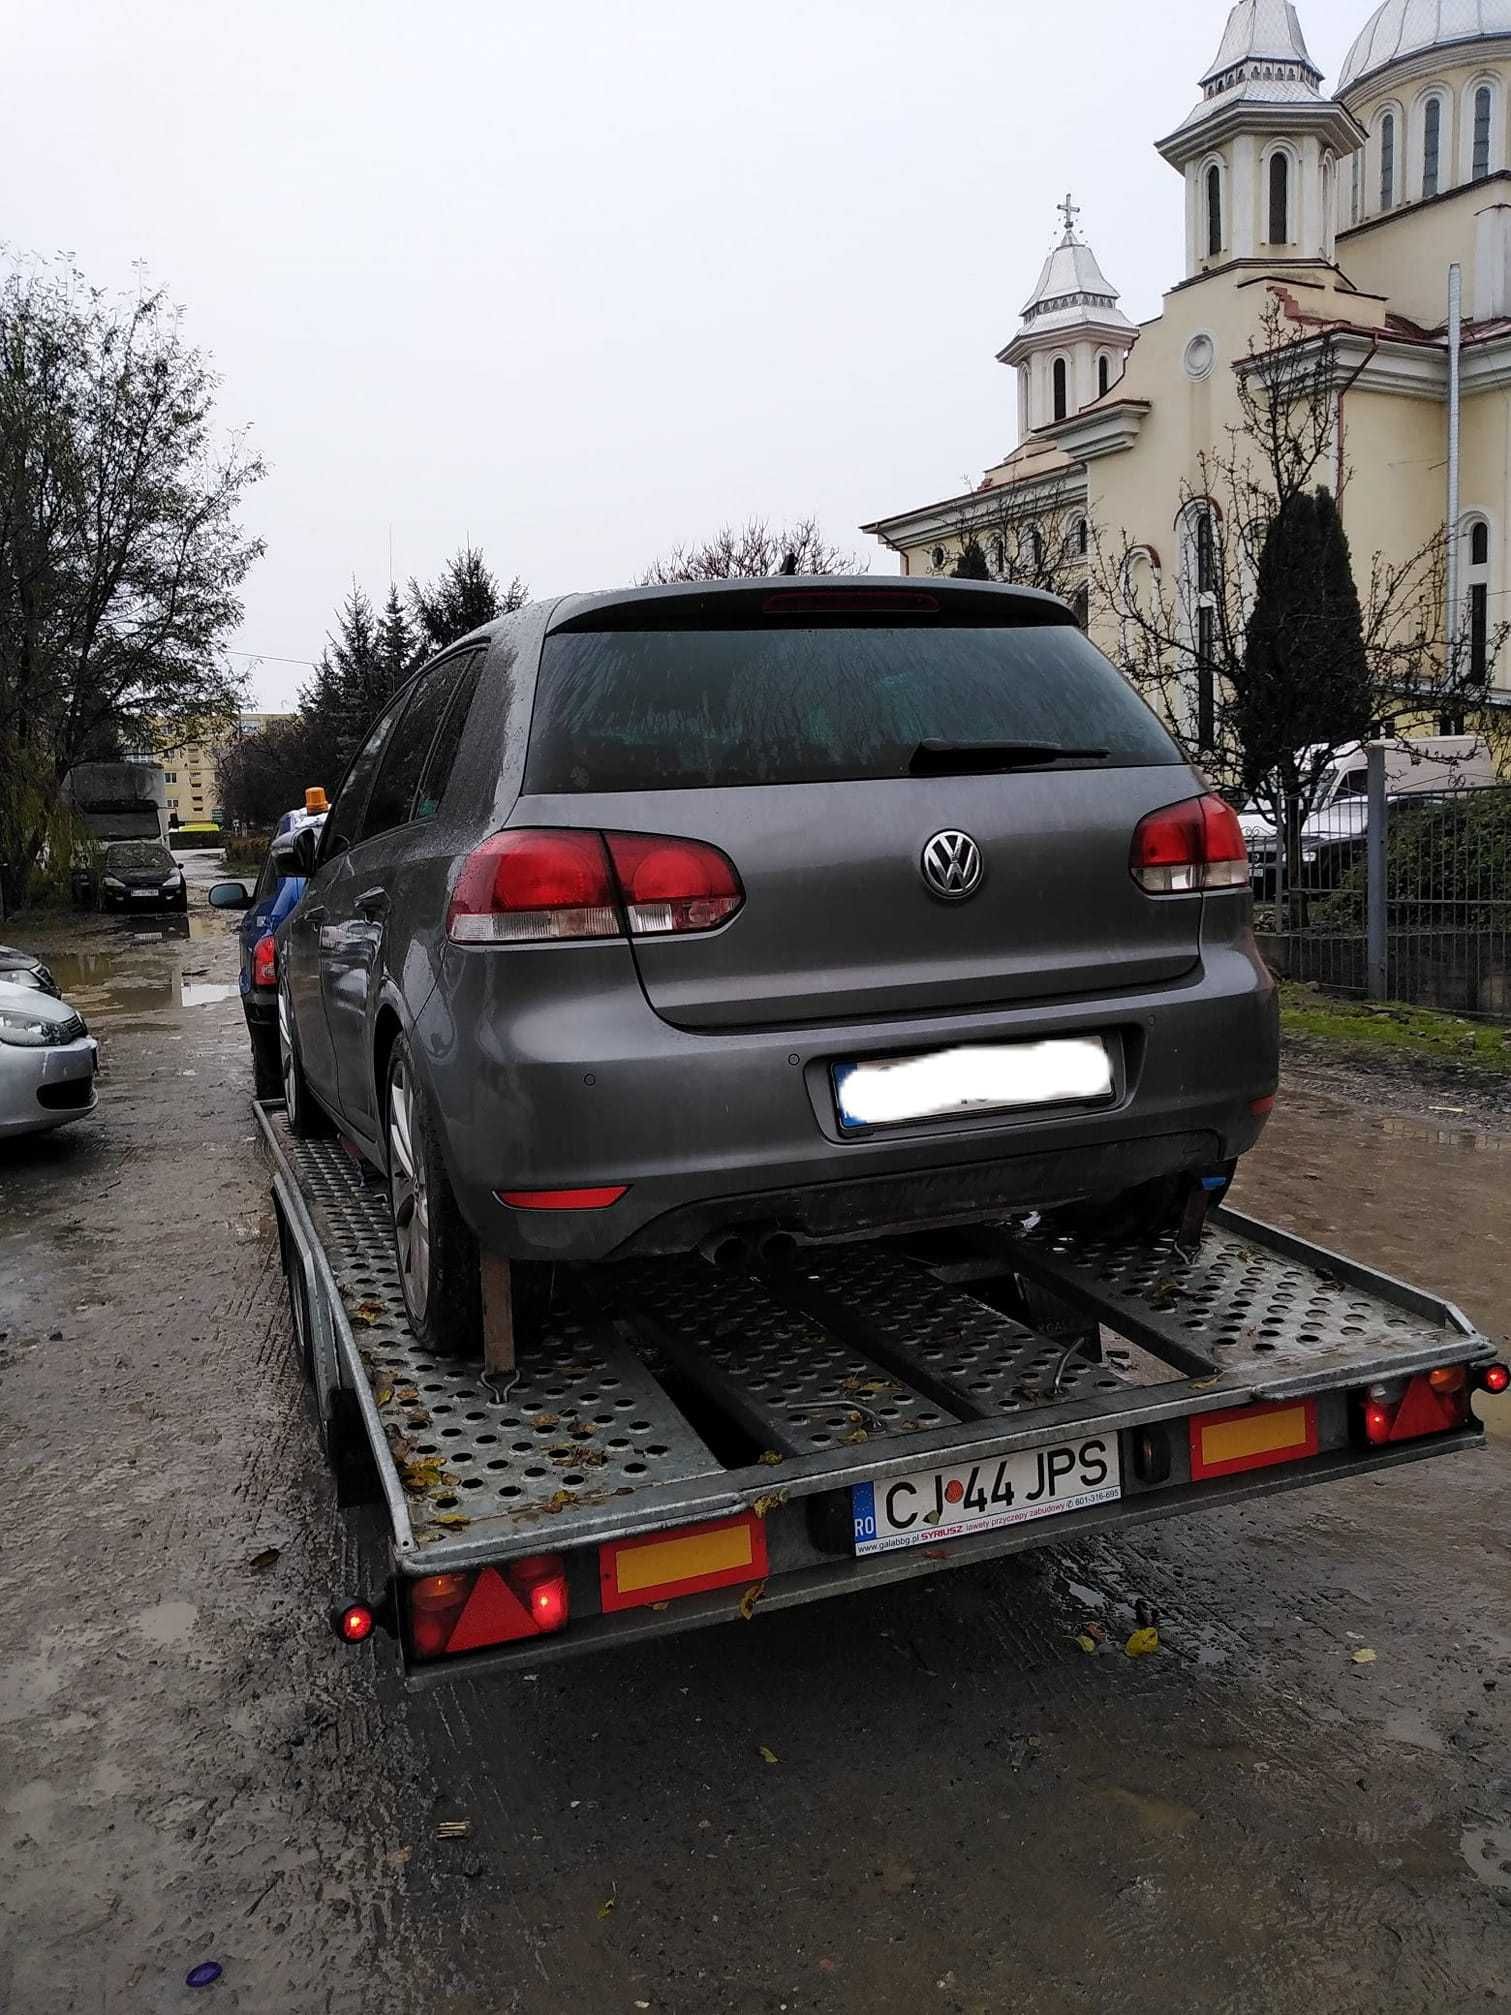 Tractari auto Turda, Cluj, R.A.R., A3, A10, DN1